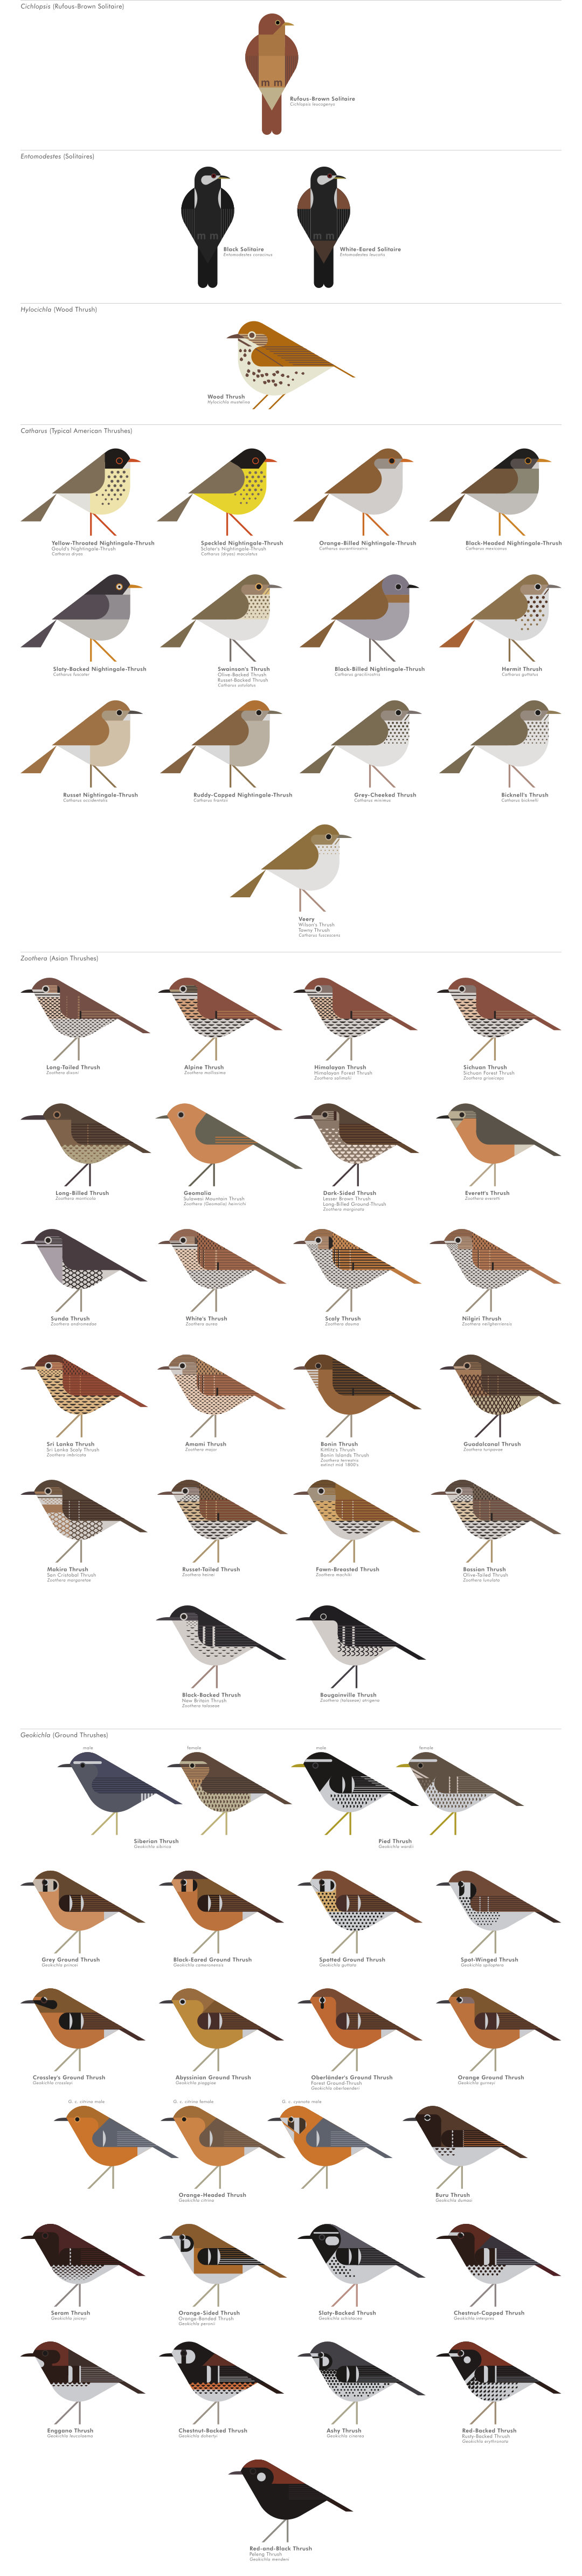 scott partridge - AVE - avian vector encyclopedia - thrushes - thrushes - bird vector art